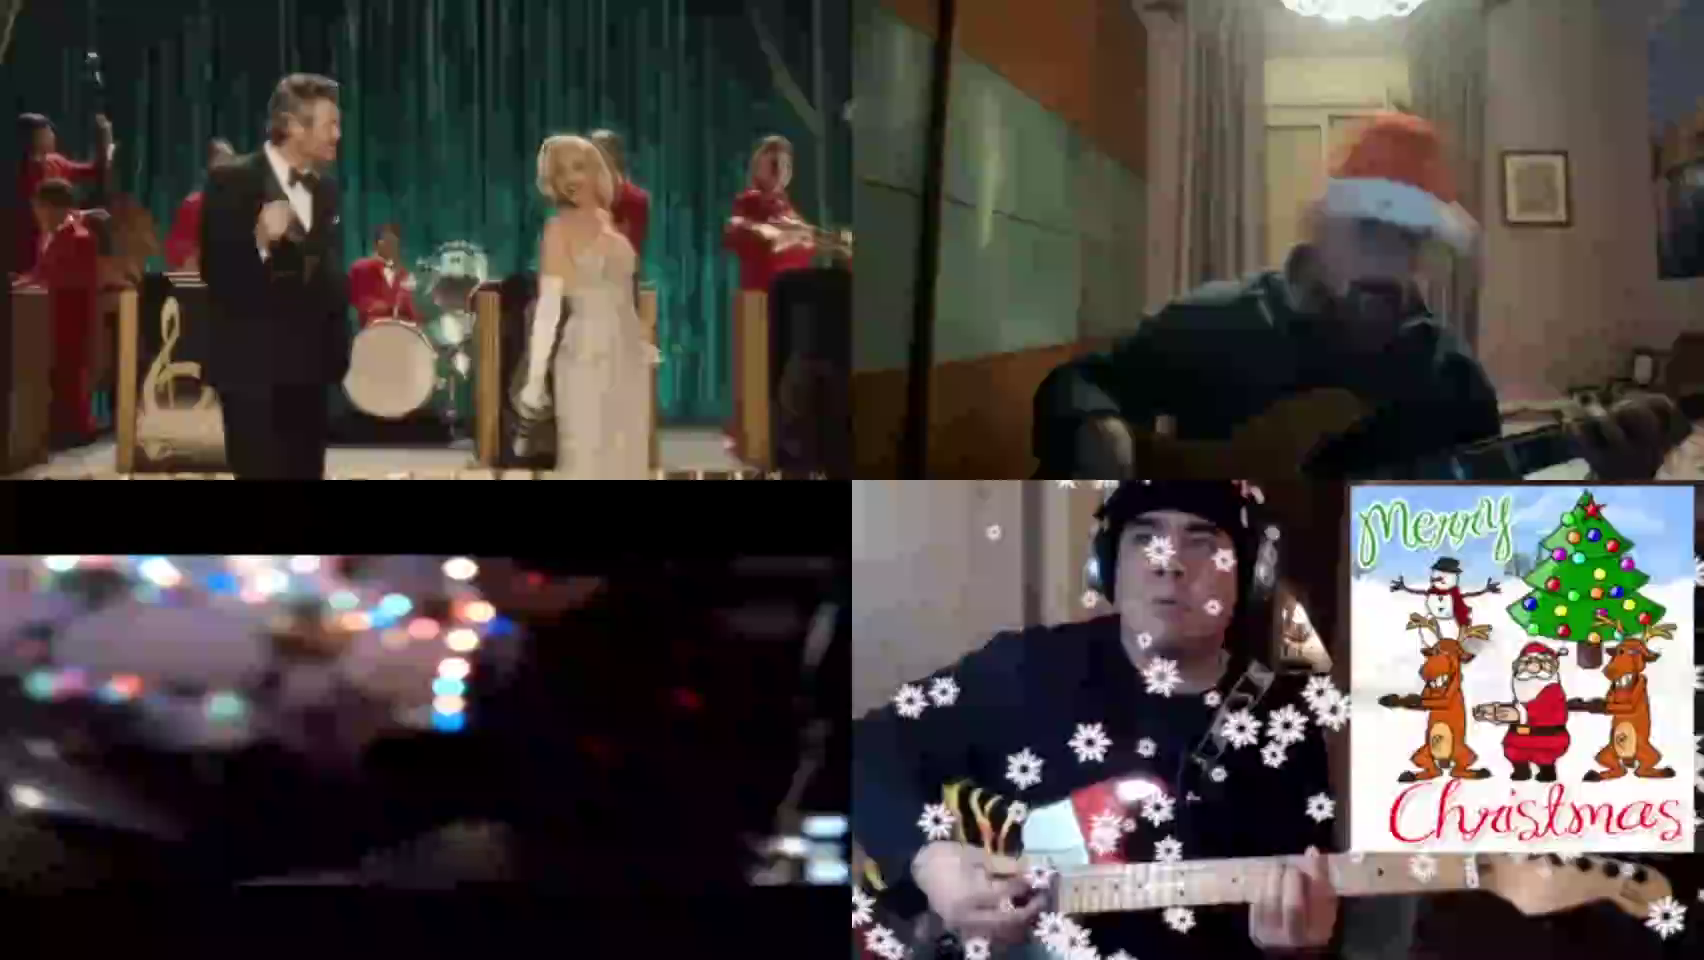 Christmas Collab #8 - You Make It Feel Like Christmas - Gwen Stefani and Blake Shelton